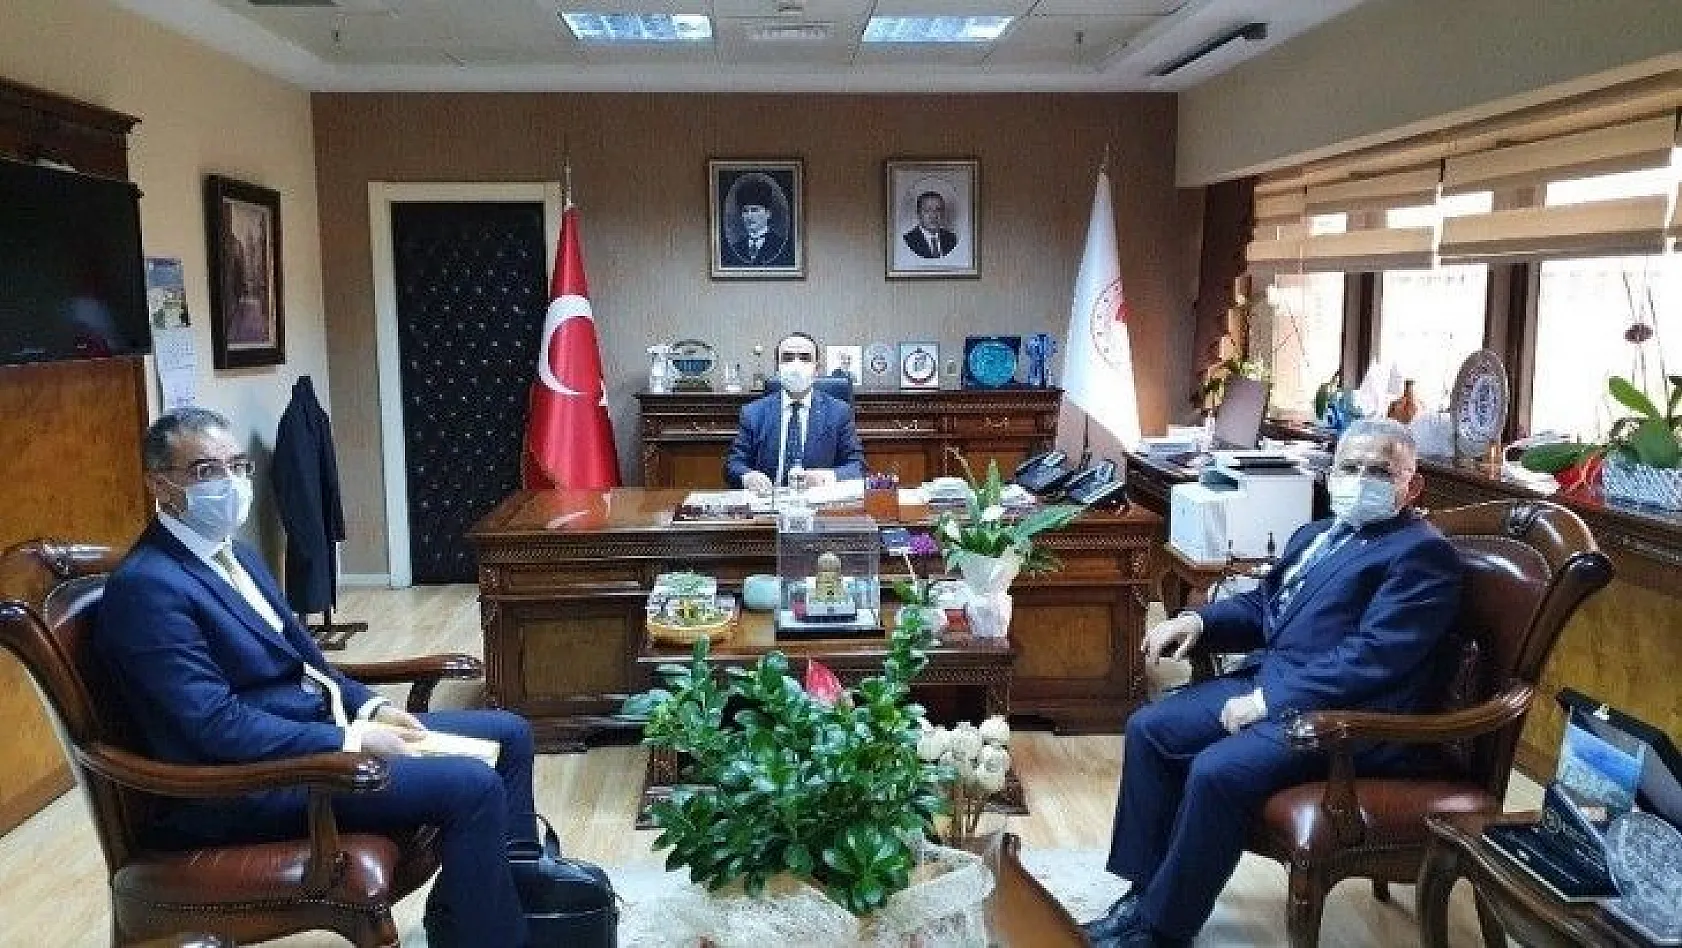 Başkan Büyükkılıç Ankara'ya çıkarma yaptı